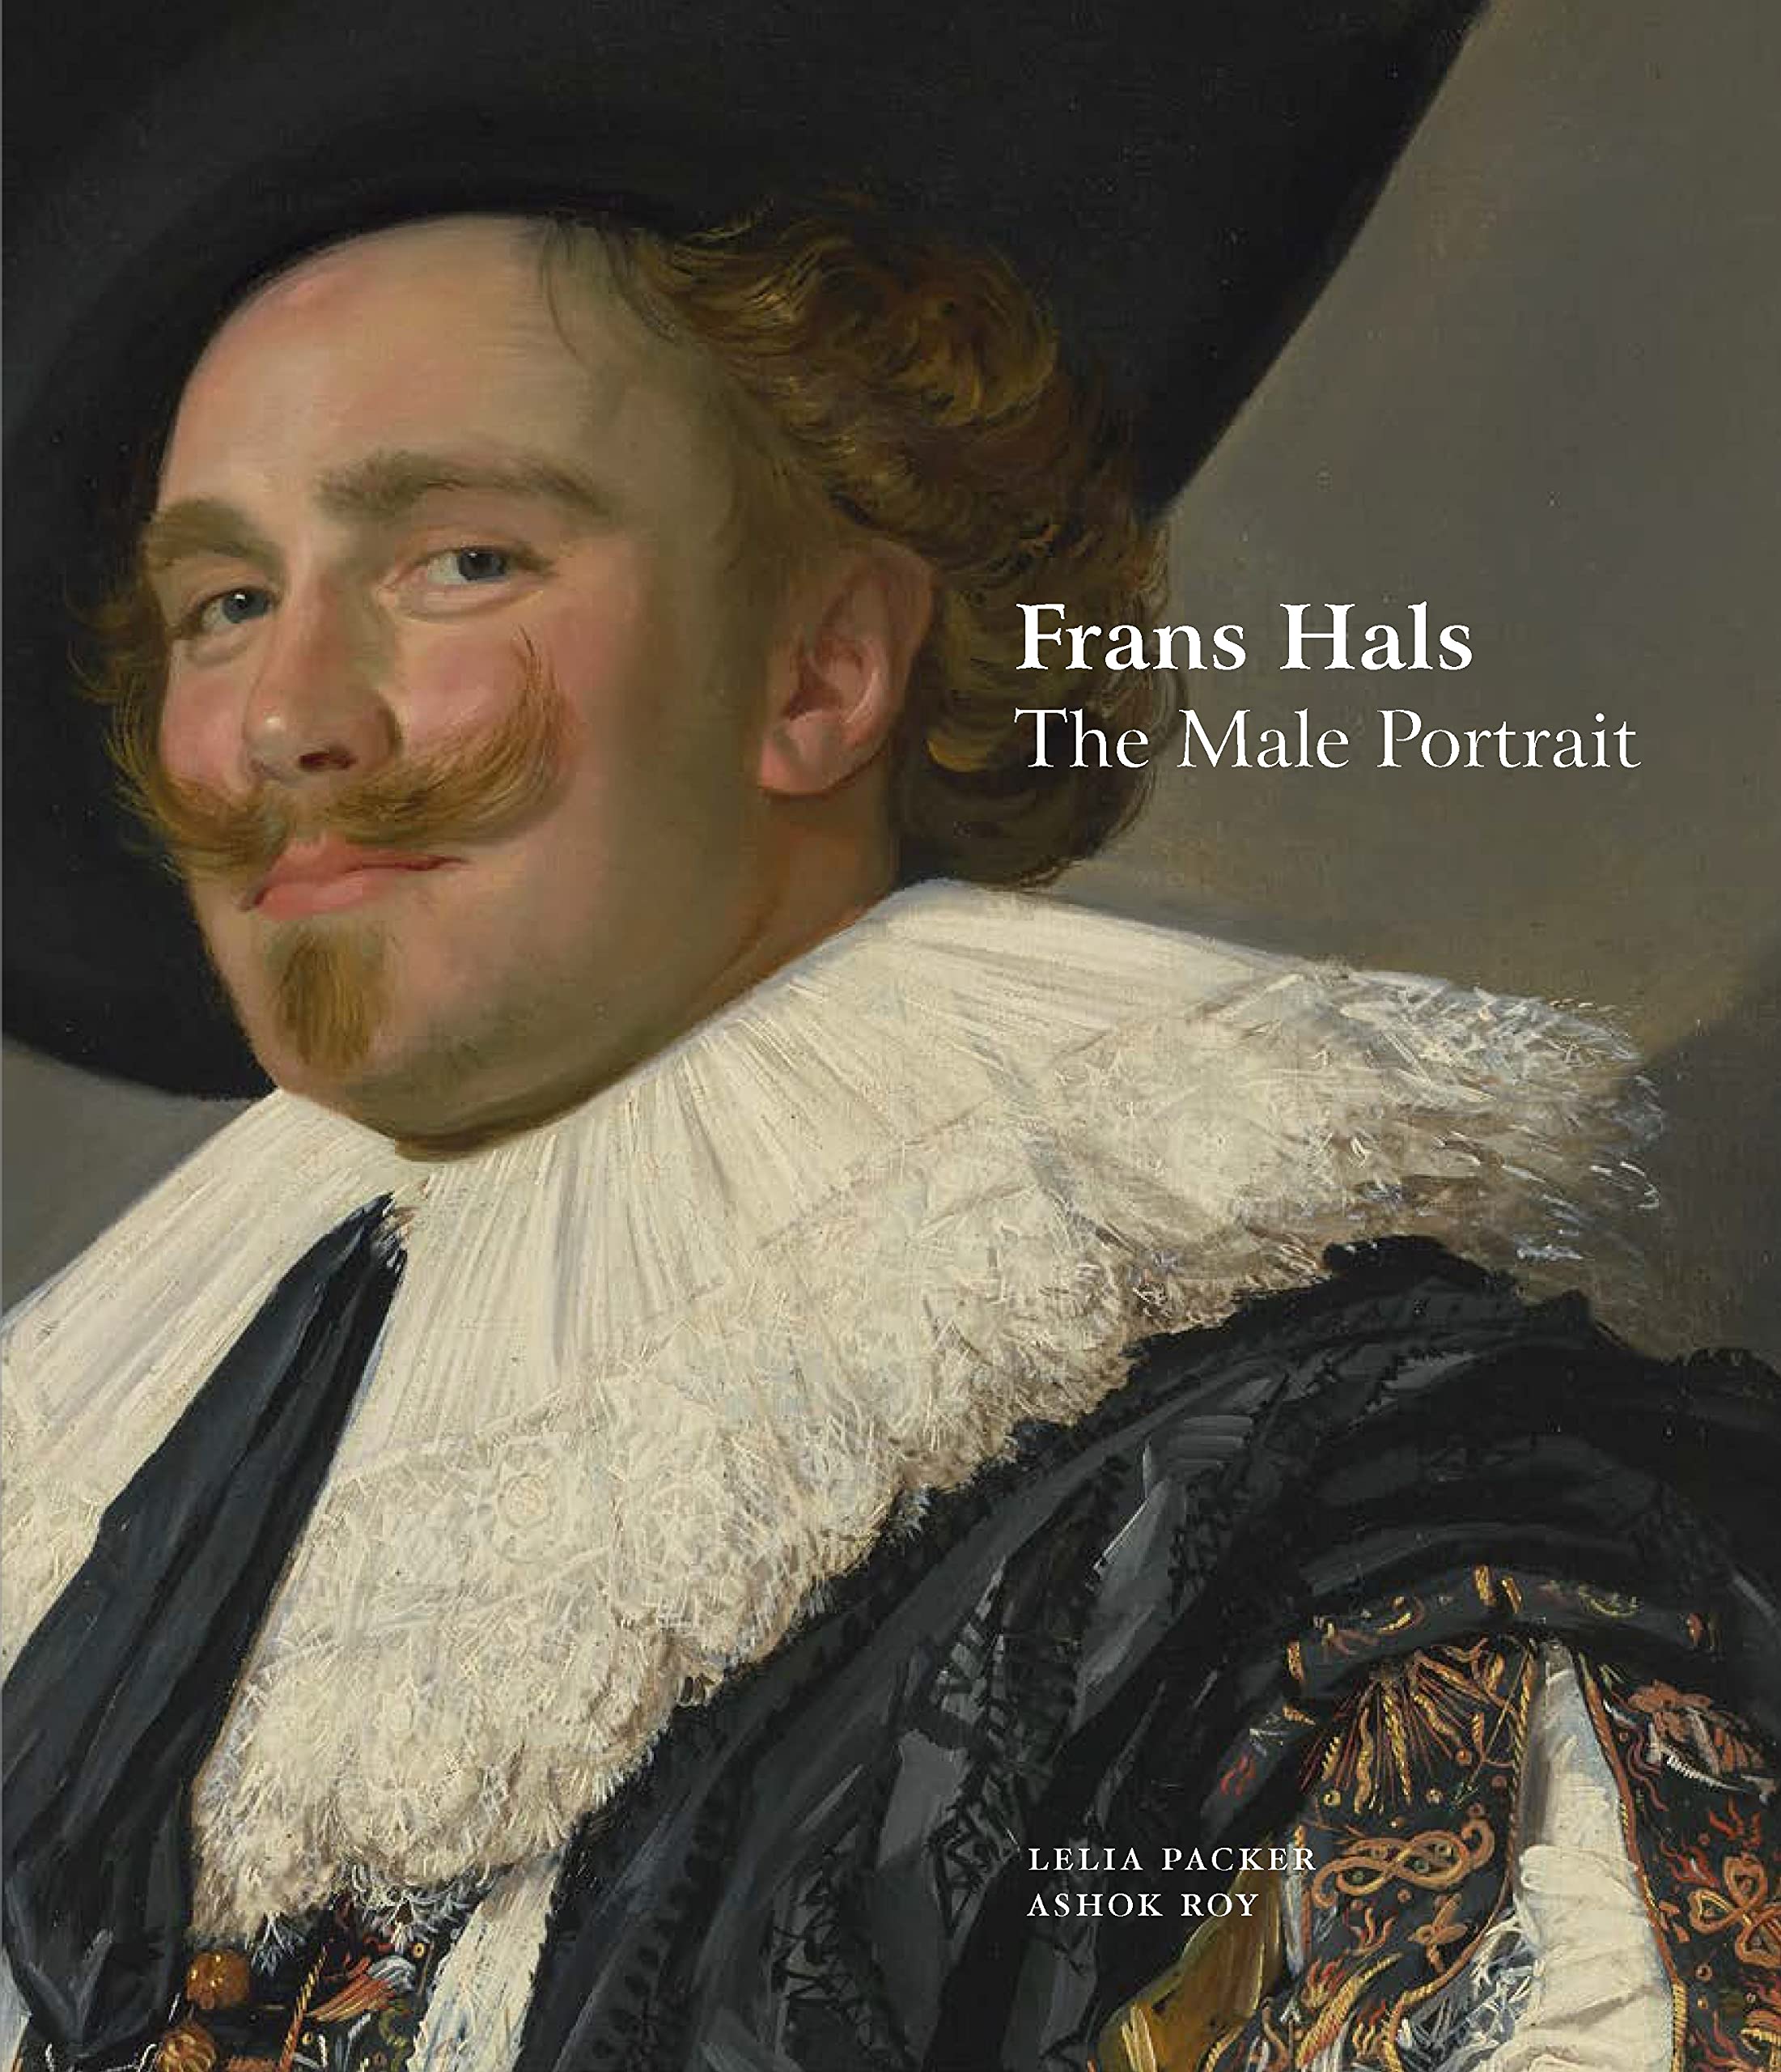 Frans Hals. The Male Portrait | Ashok Roy, Leila Packer, Frans Hals